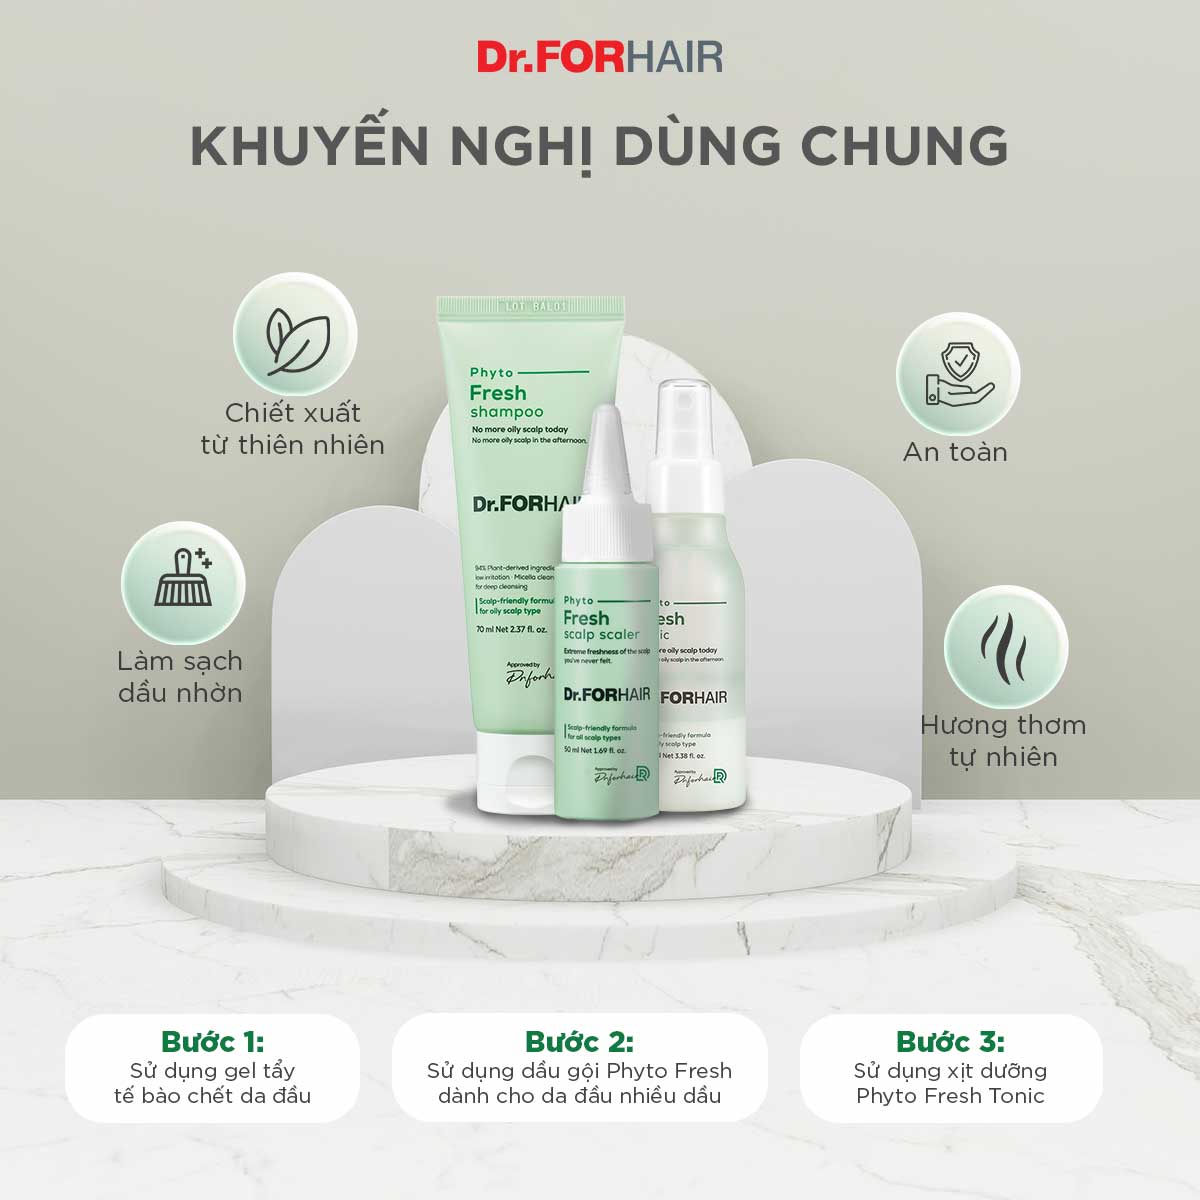 Dầu gội chiết xuất thực vật giảm dầu giảm nhờn giảm mùi hôi cho da đầu Dr.FORHAIR Phyto Fresh Shampoo